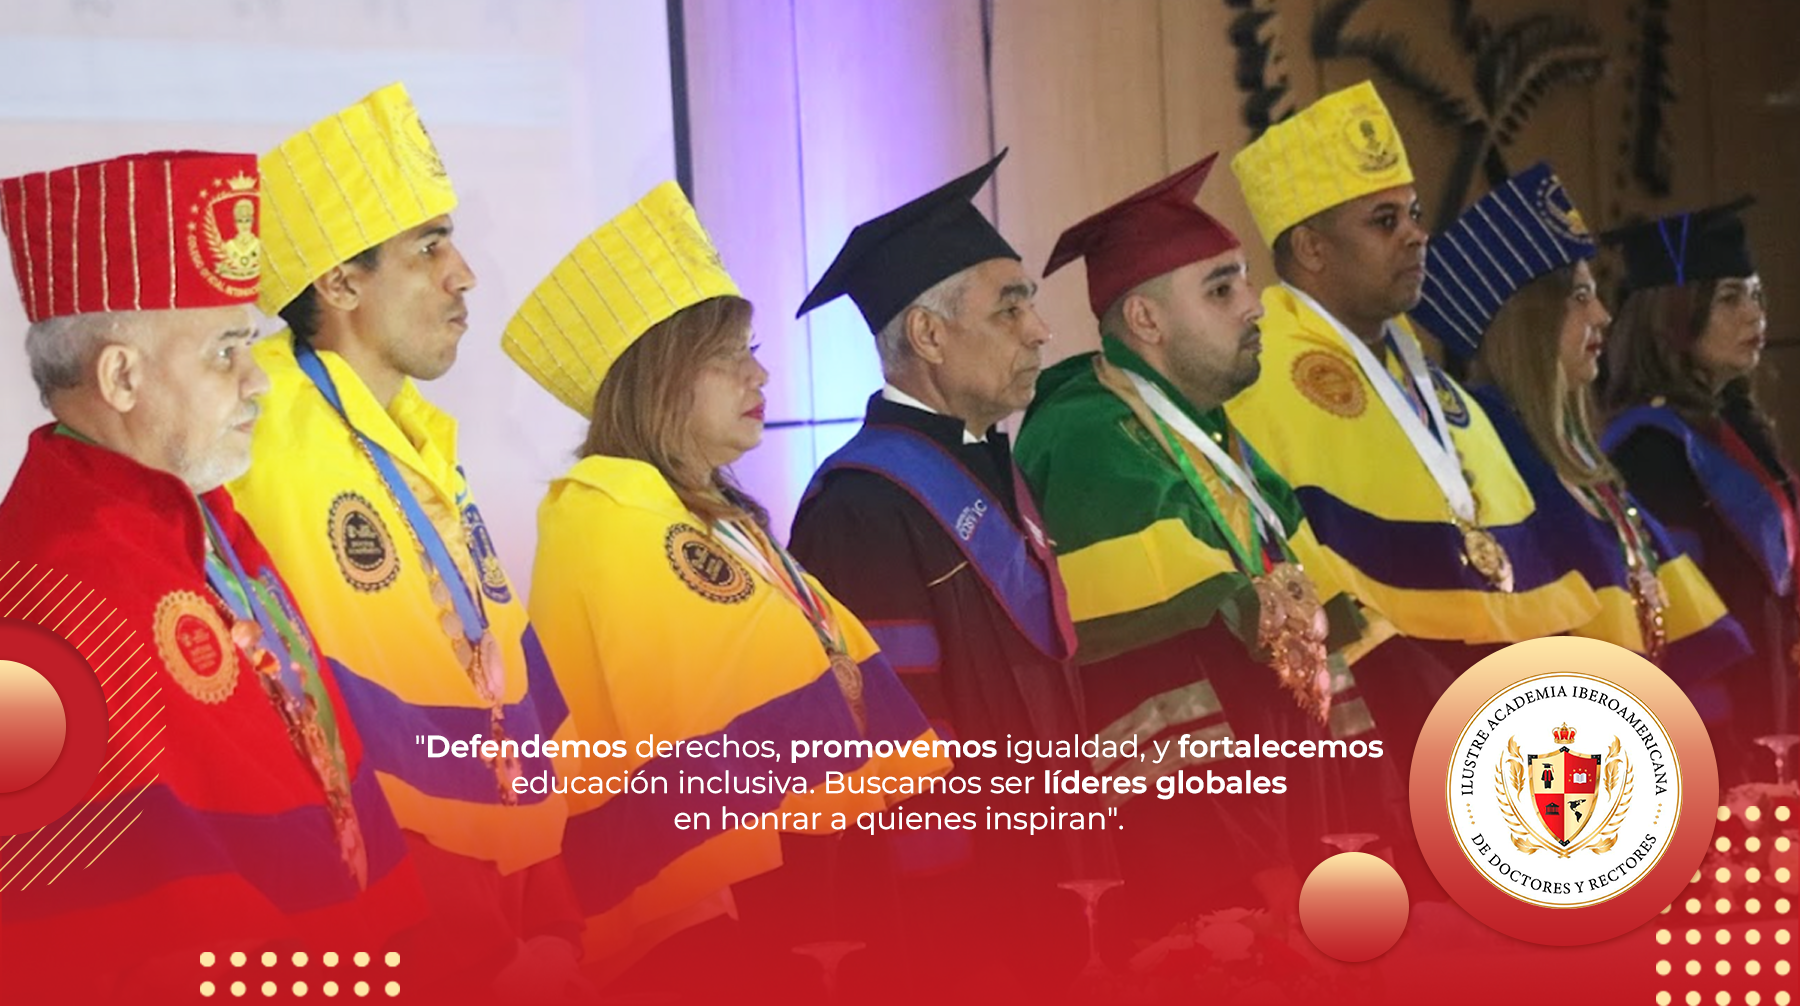 Ilustre Academia Iberoamericana de Doctores y Rectores